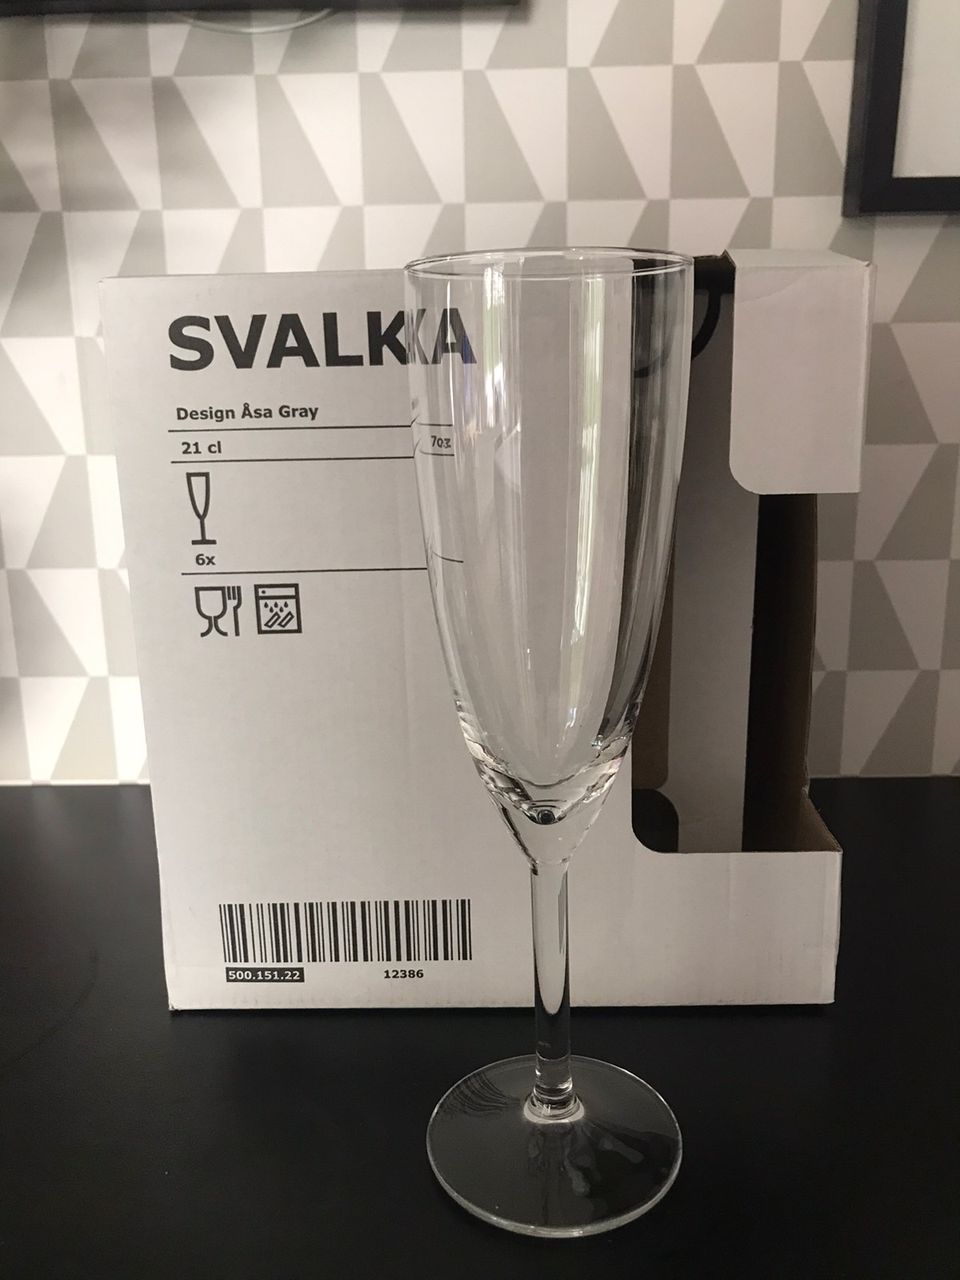 Samppanjalasit 4 pkt / 24 kpl Ikea Svalka